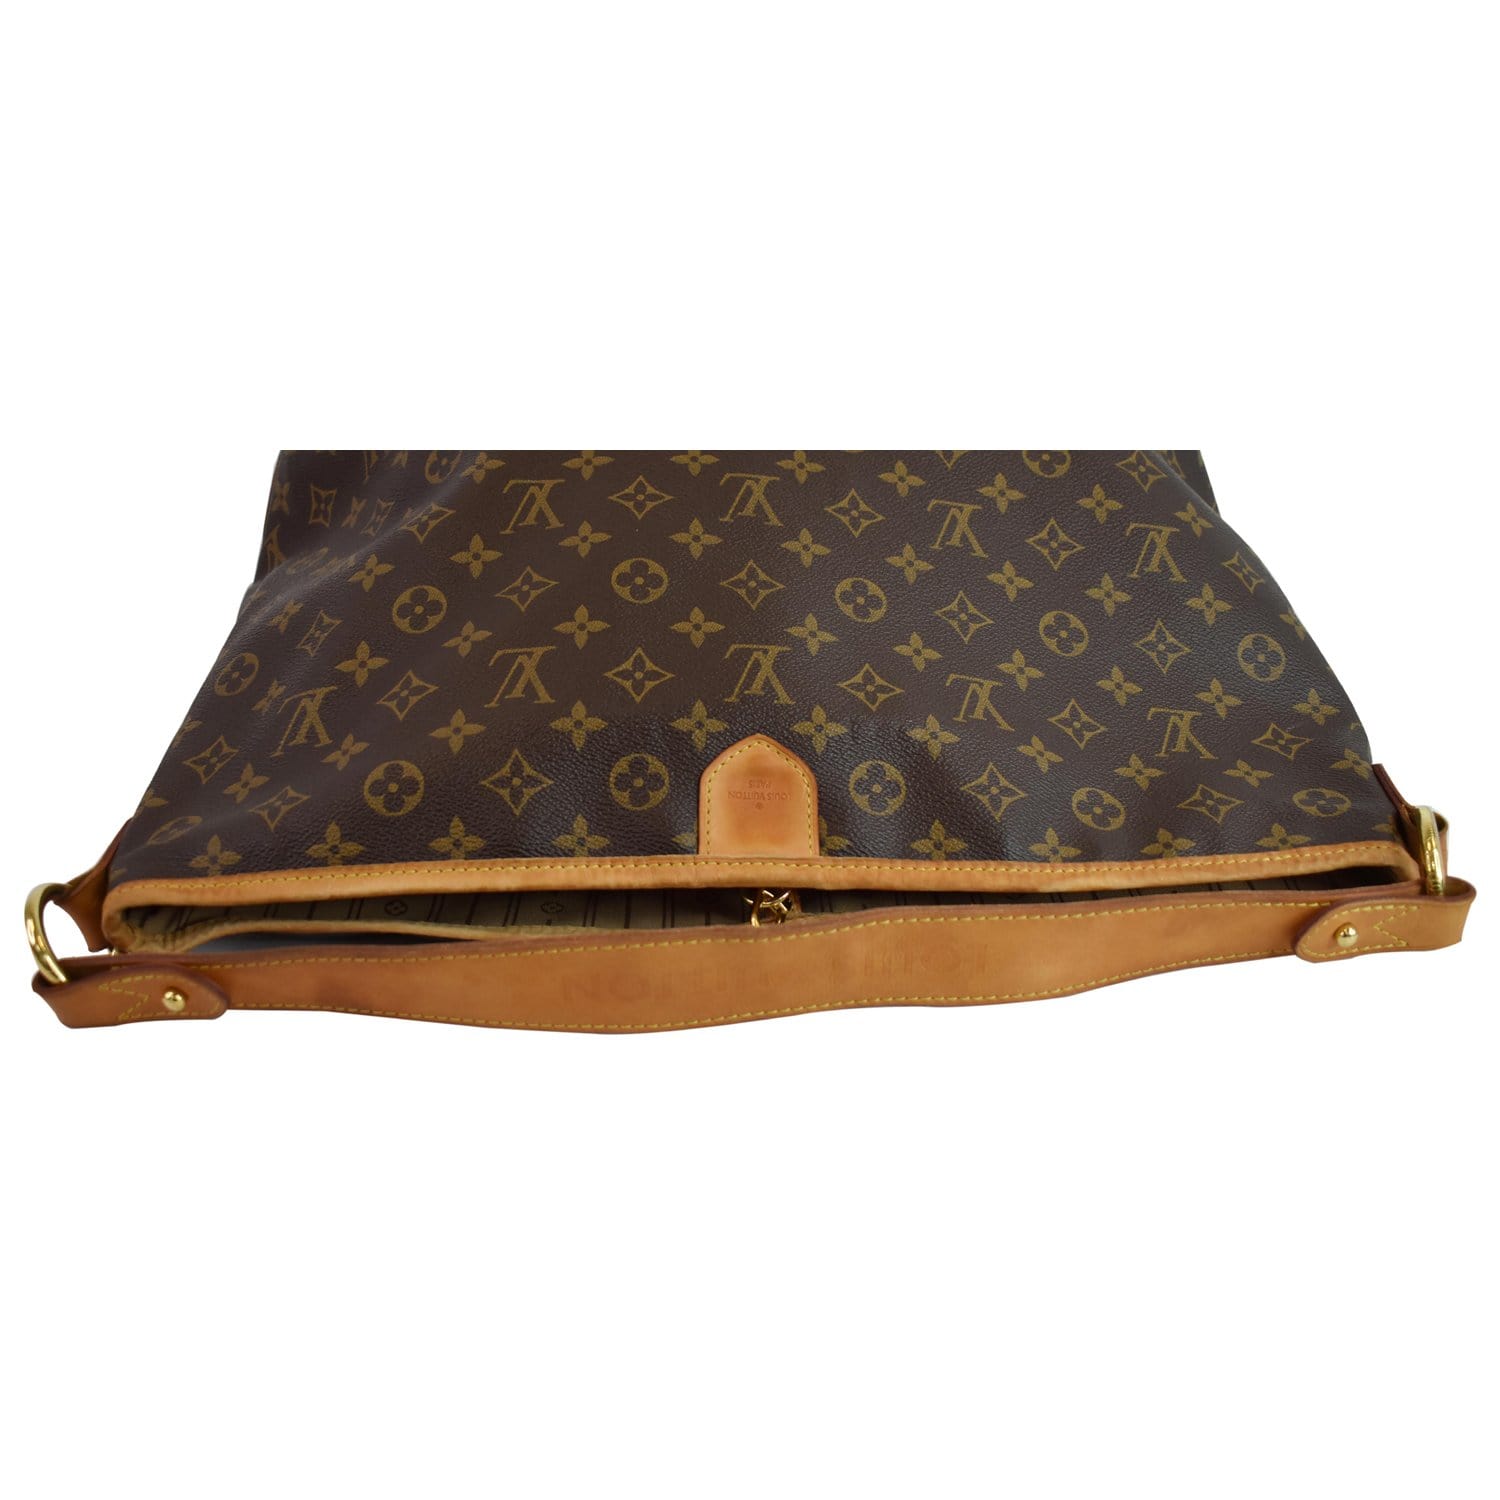 Delightful cloth handbag Louis Vuitton Brown in Cloth - 35562343